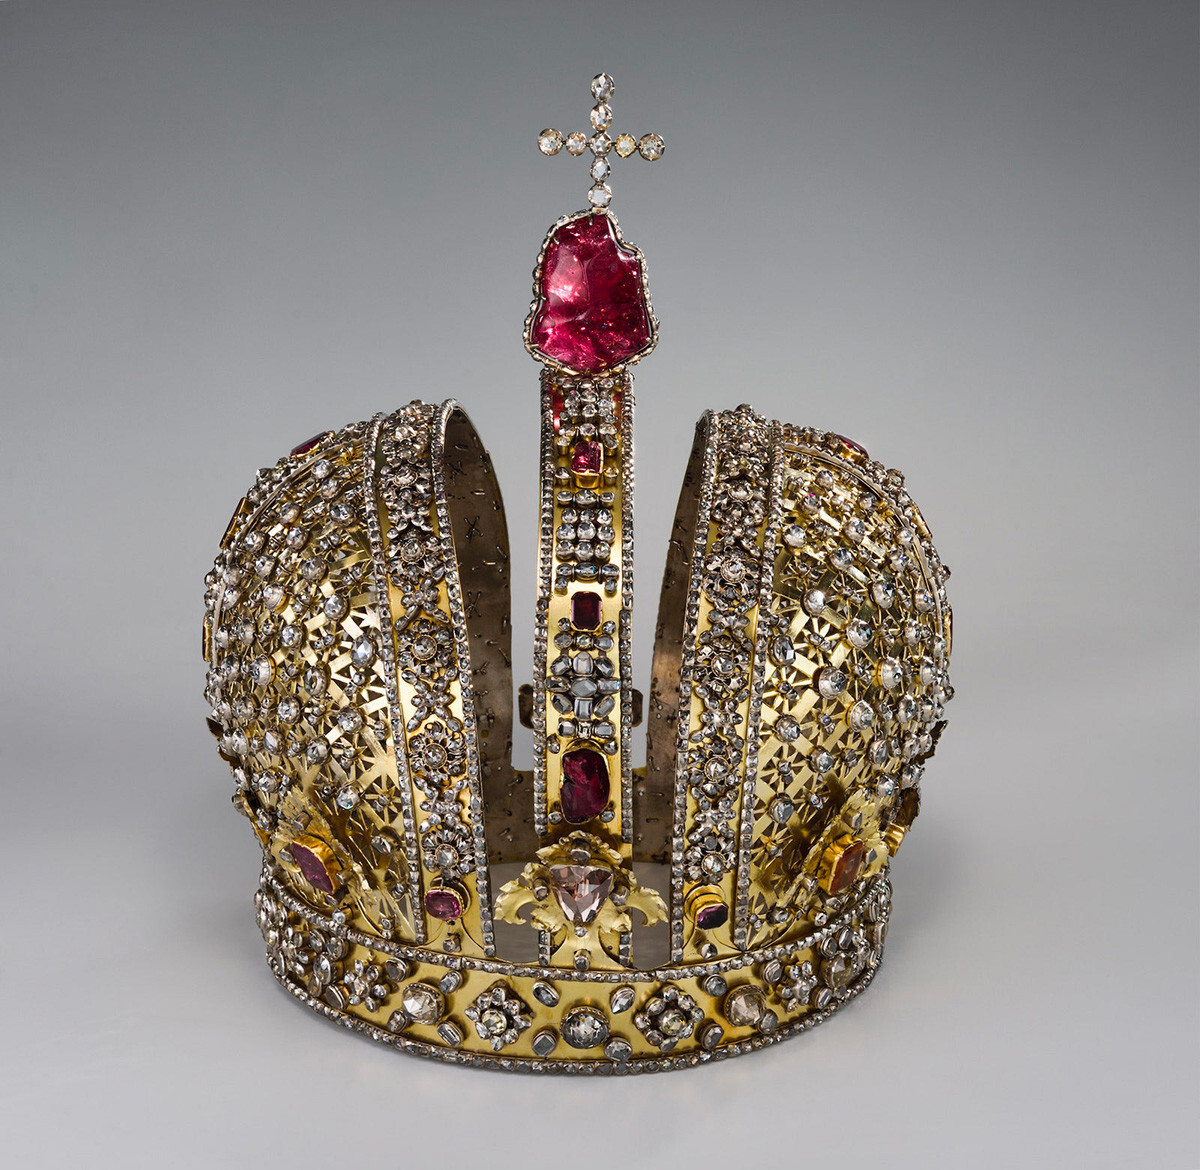 La corona dell'imperatrice Anna Ioannovna
